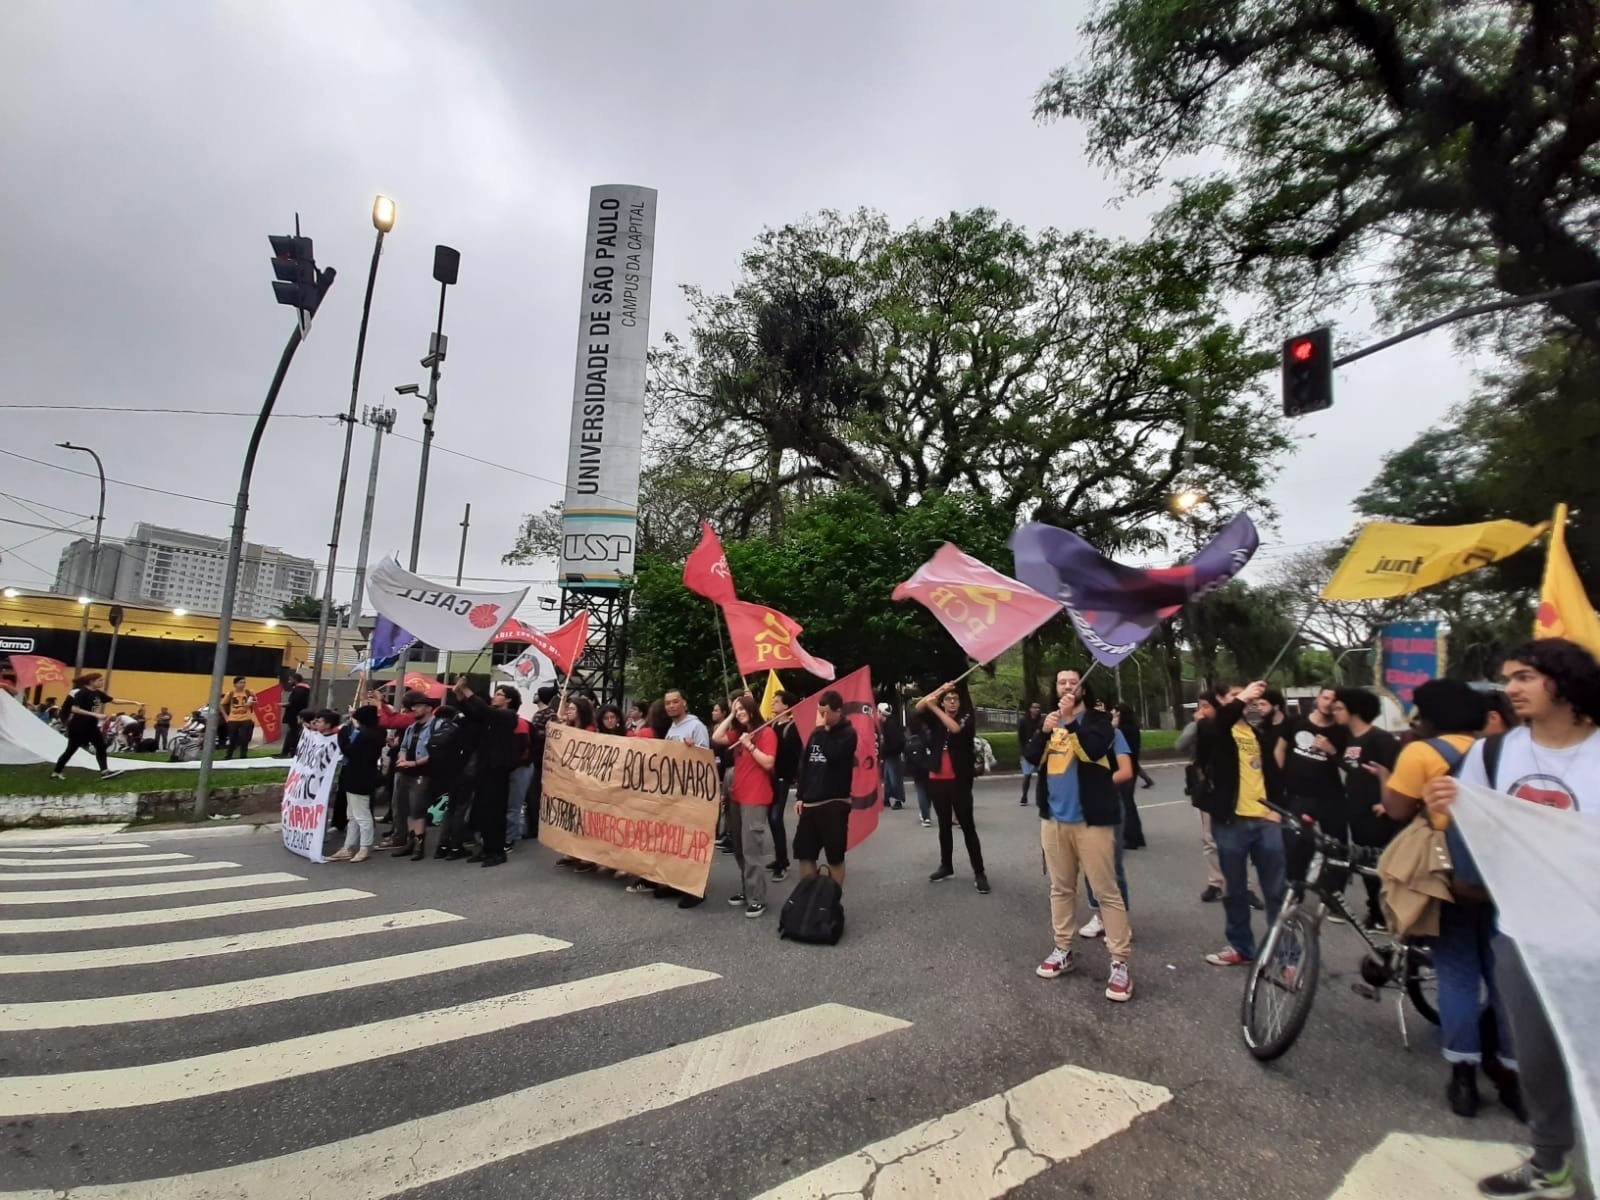 Notícia] Estudantes se manifestam contra a permanência do prof